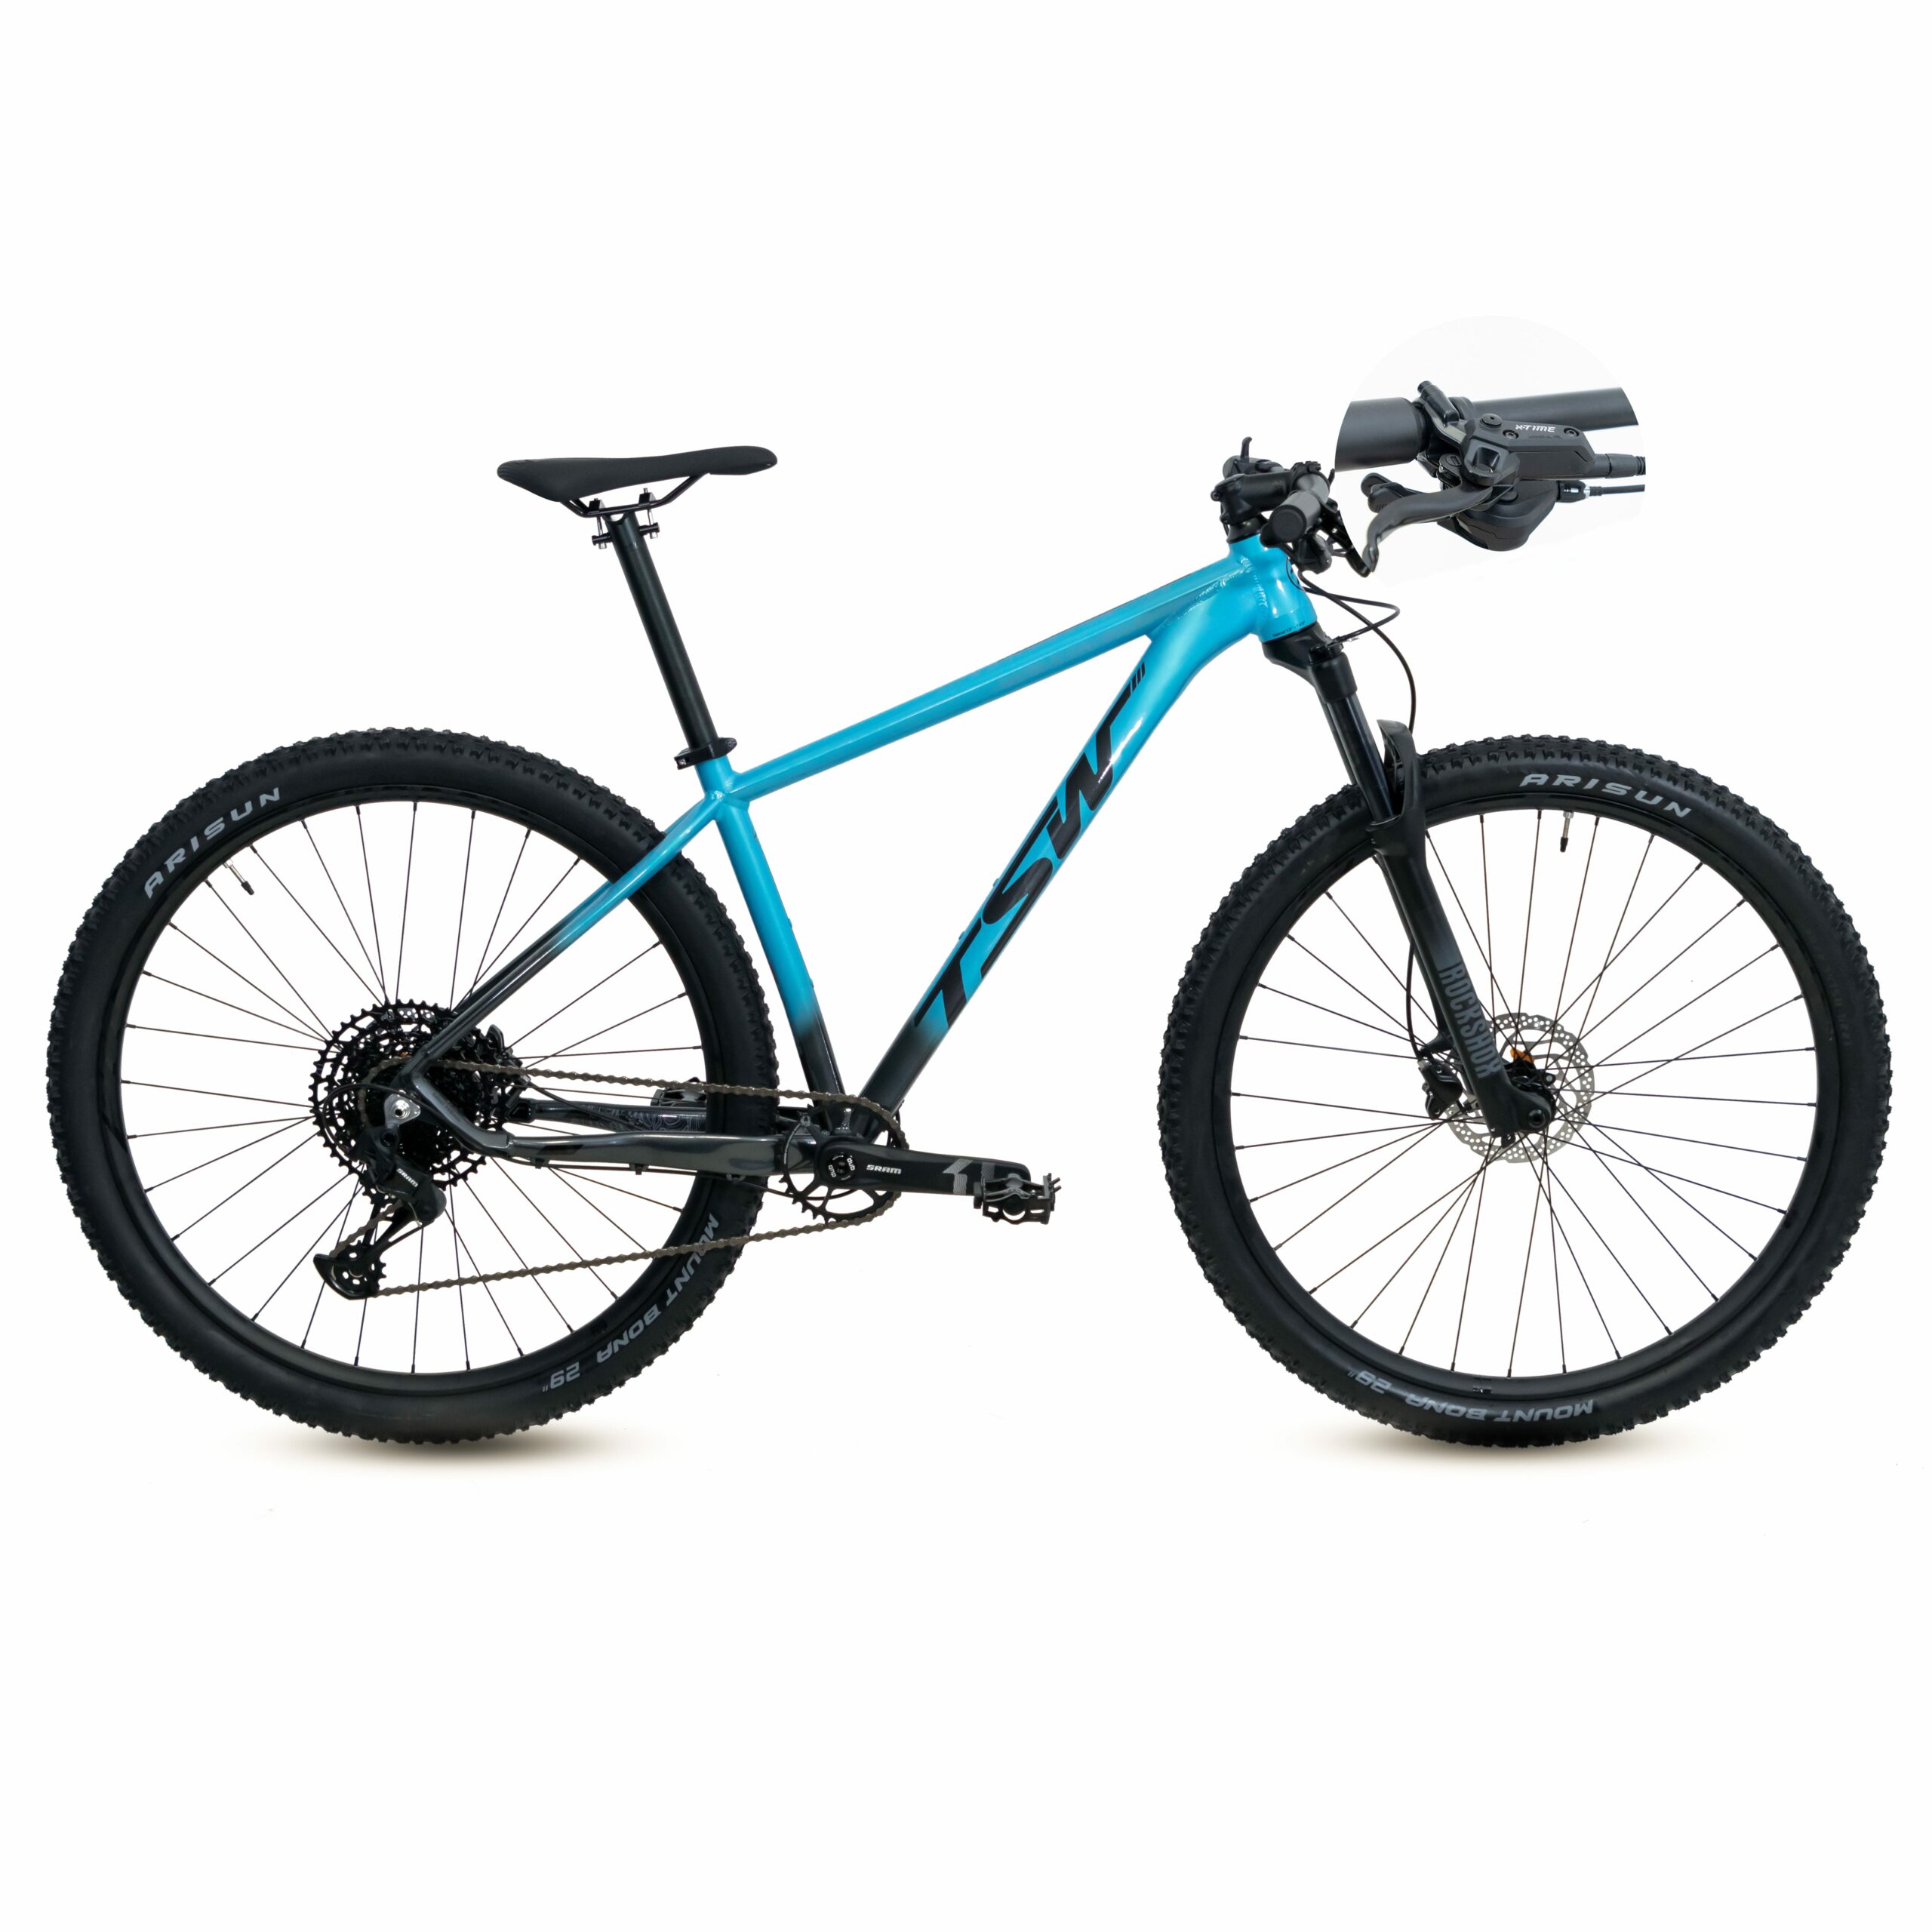 Bicicleta TSW Yukon Freio X-Time | SM-12 | 2021/2022 - 17.5", Azul/Cinza